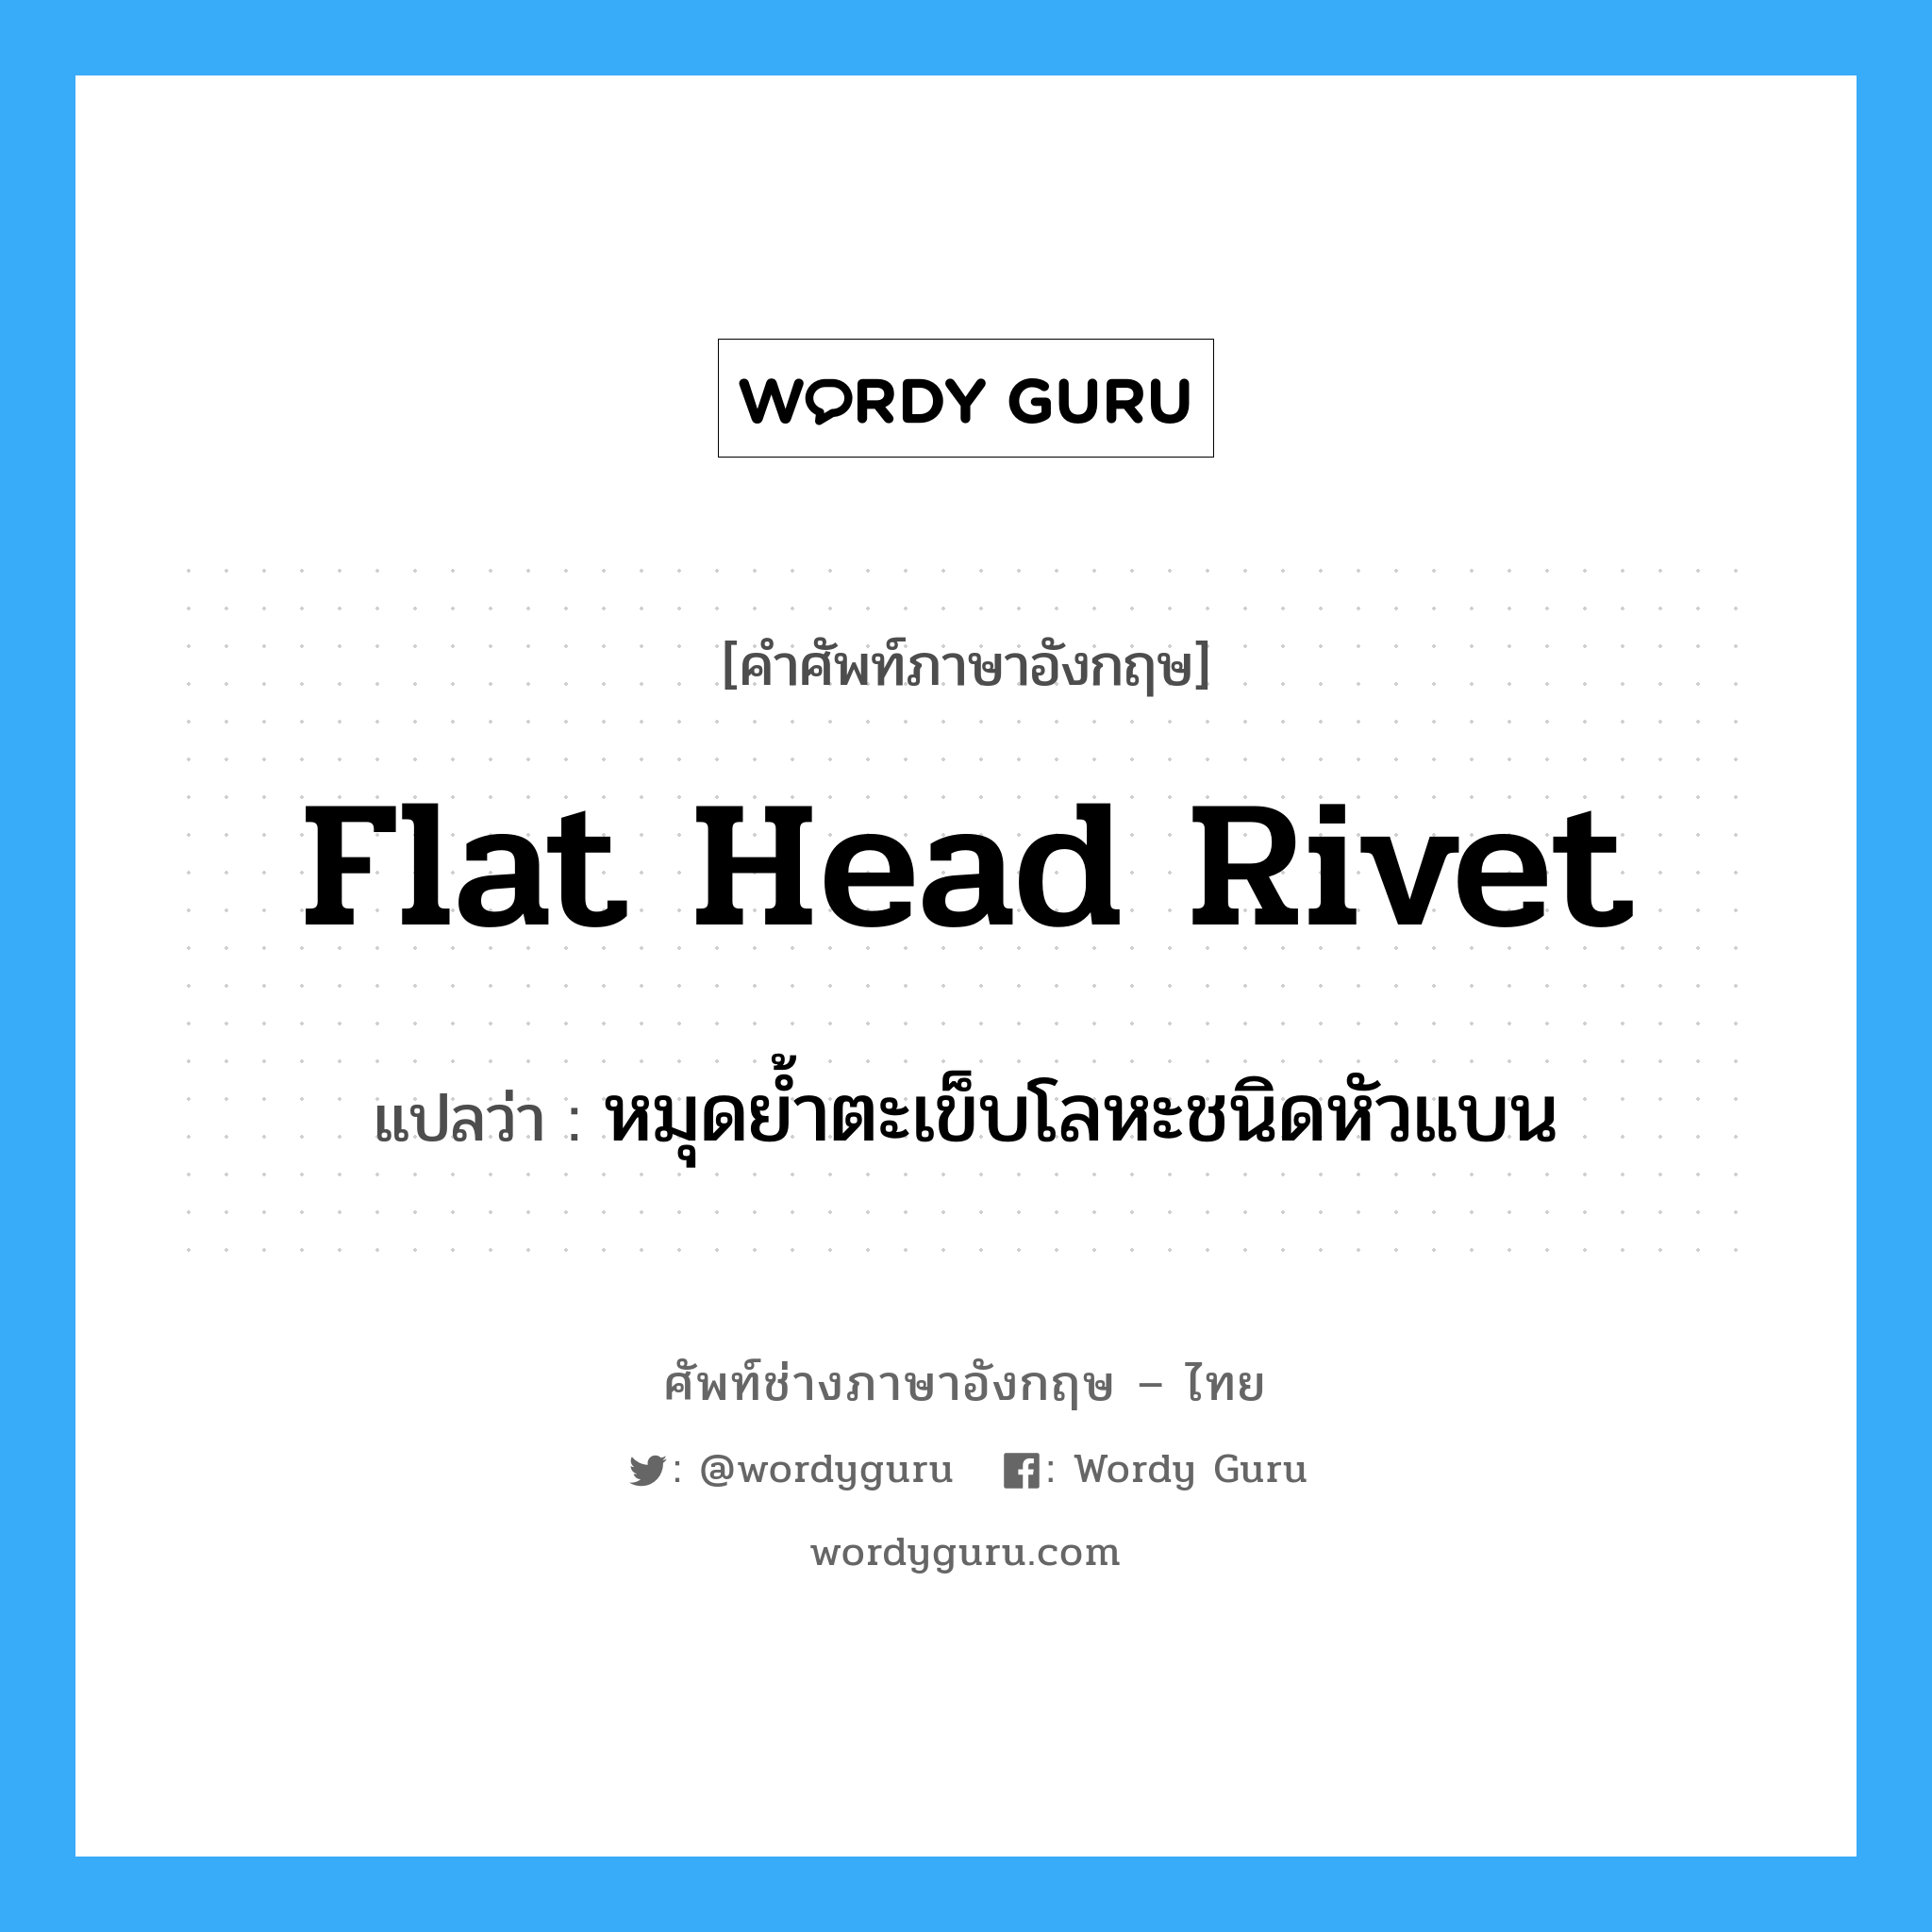 flat-head rivet แปลว่า?, คำศัพท์ช่างภาษาอังกฤษ - ไทย flat head rivet คำศัพท์ภาษาอังกฤษ flat head rivet แปลว่า หมุดย้ำตะเข็บโลหะชนิดหัวแบน